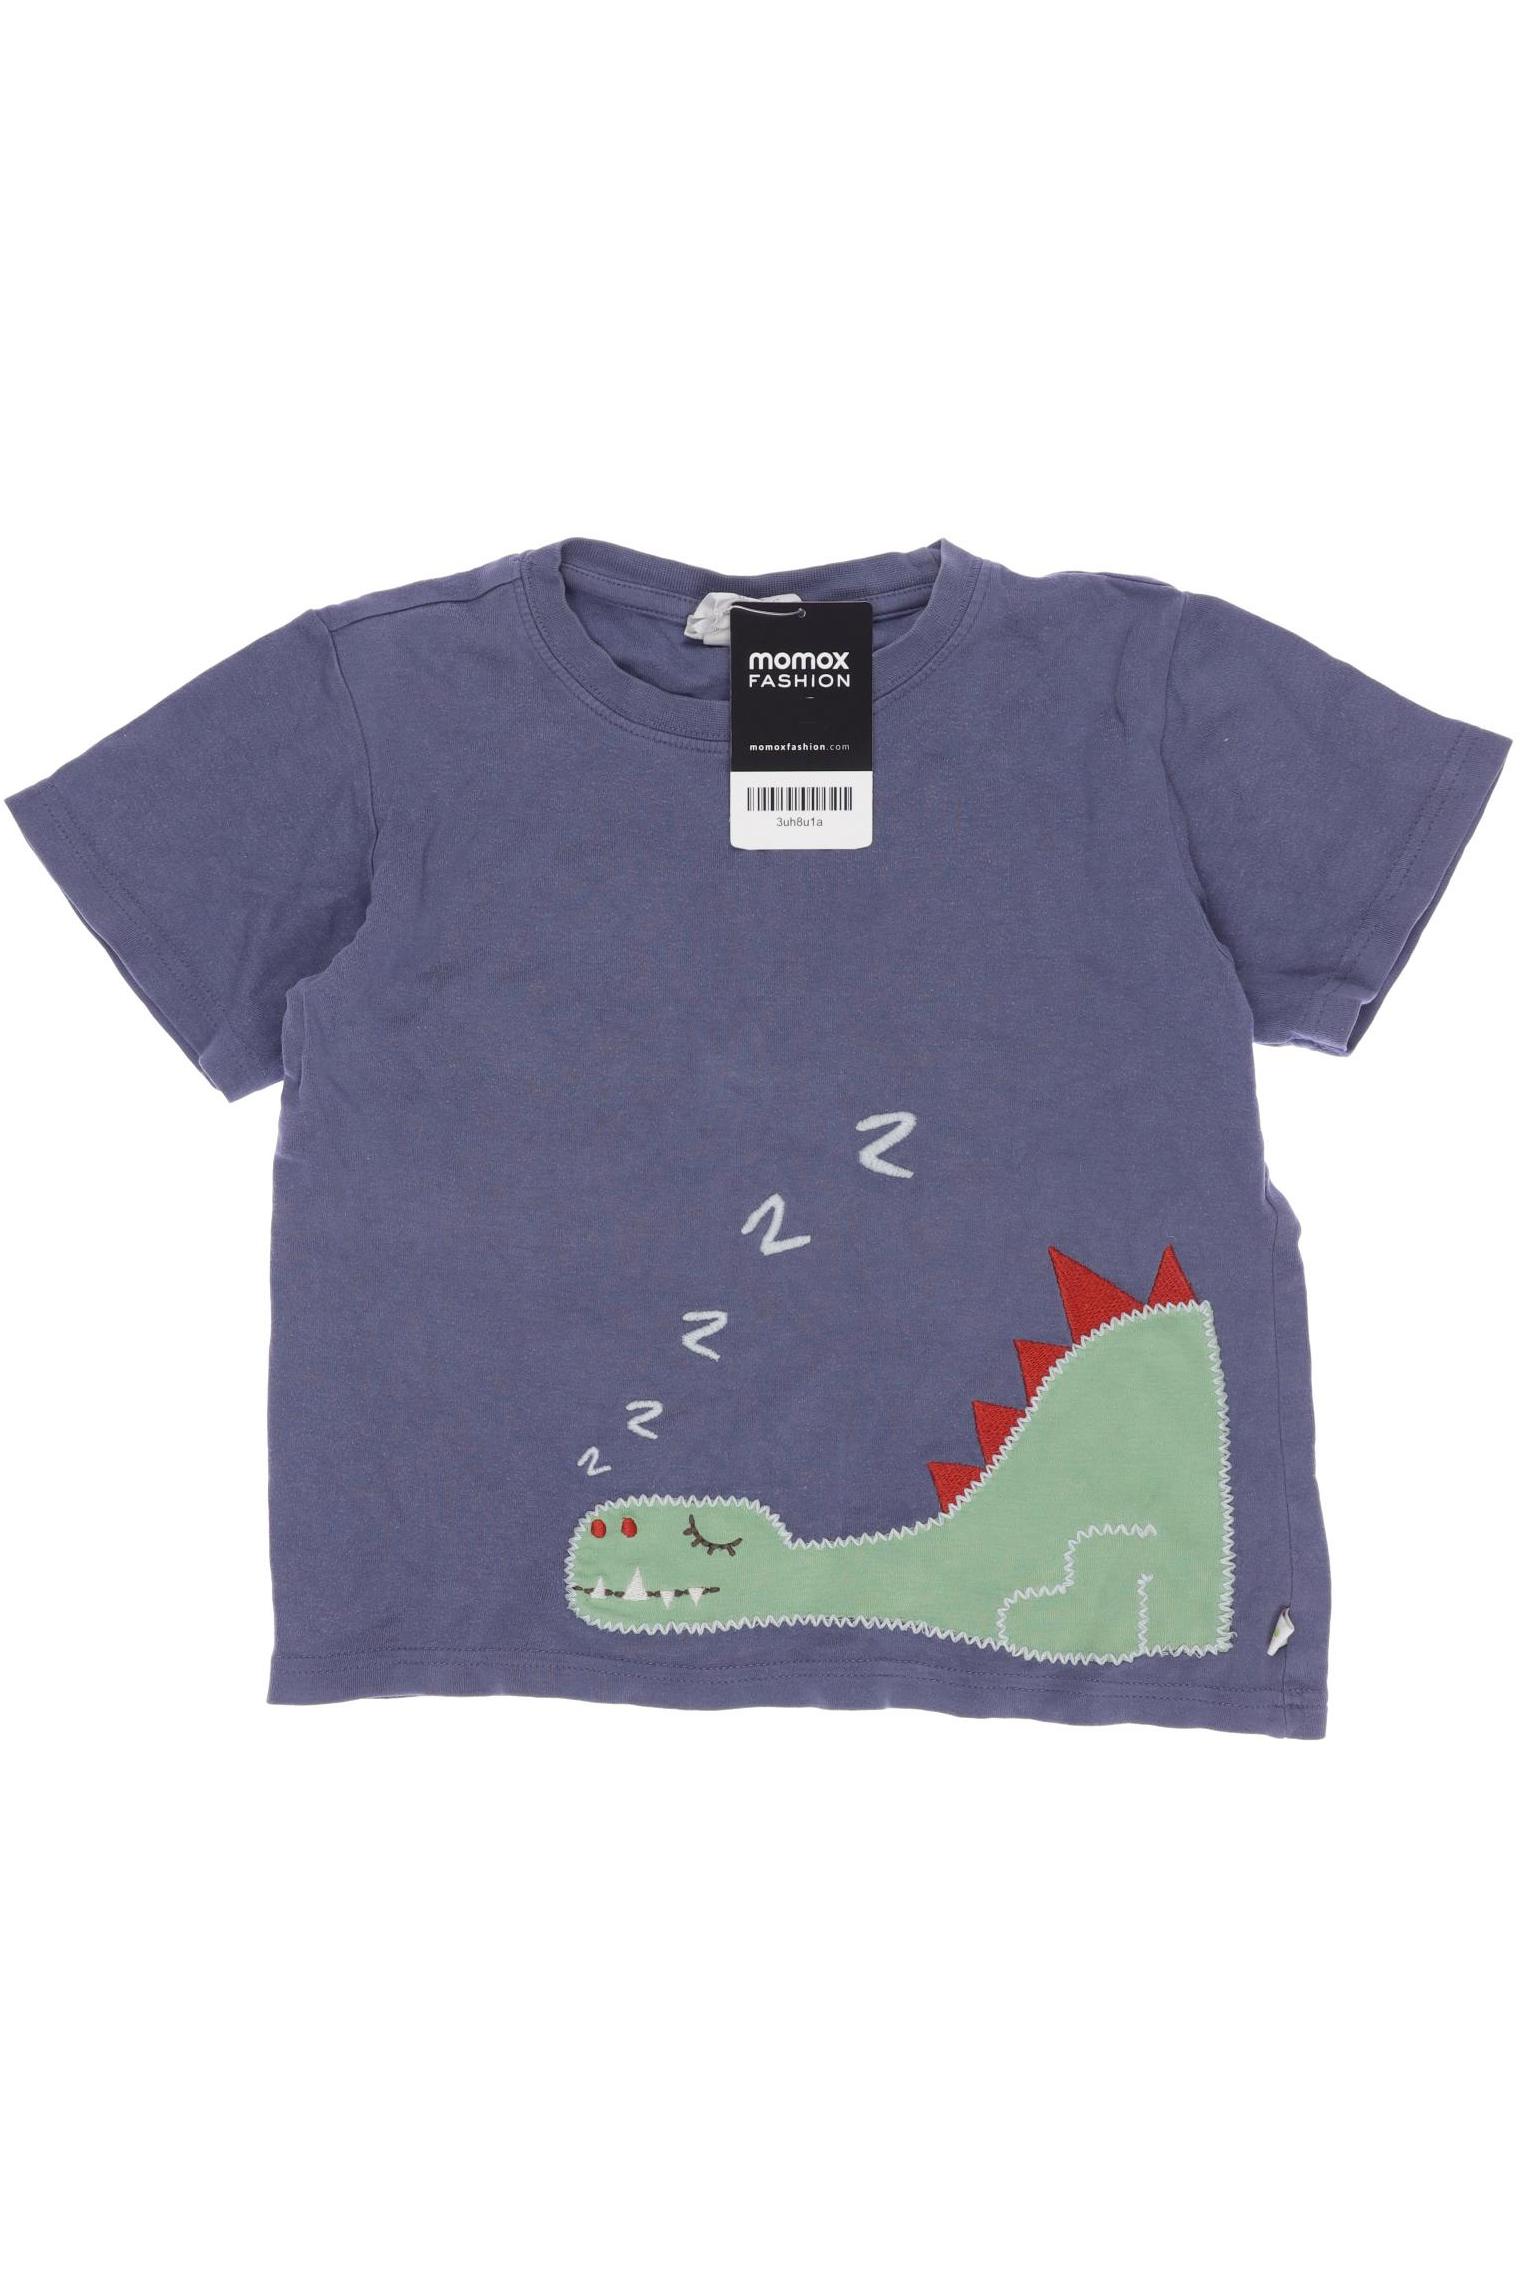 Frugi Herren T-Shirt, marineblau, Gr. 104 von Frugi